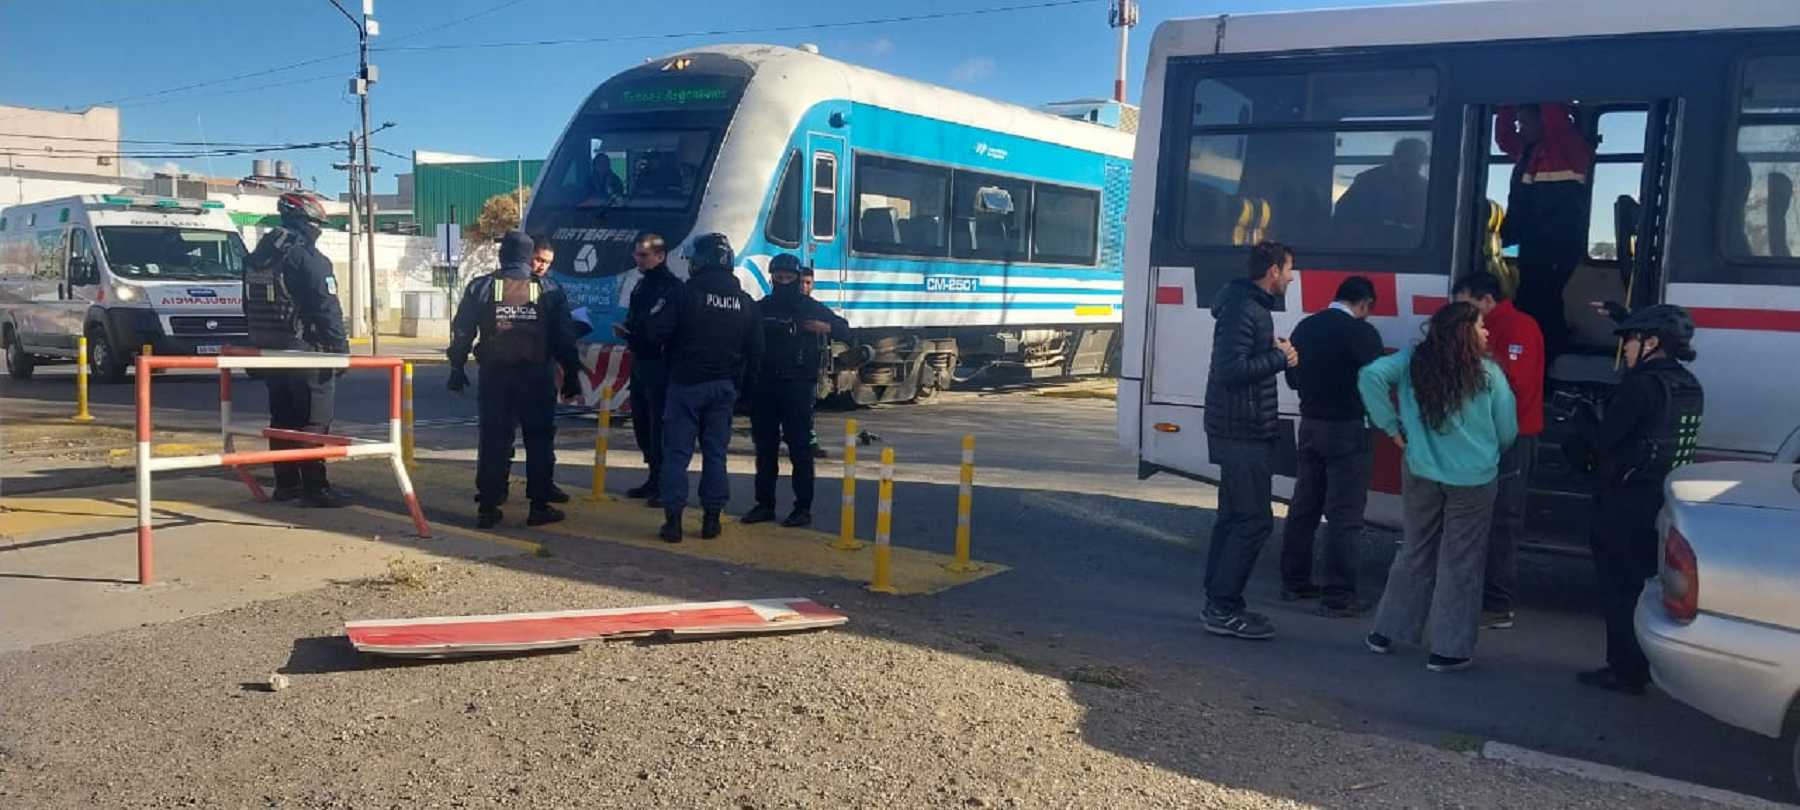 Un colectivo chocó el Tren del Valle y es un caos el tránsito del bajo en Neuquén. Foto: Diario Río Negro